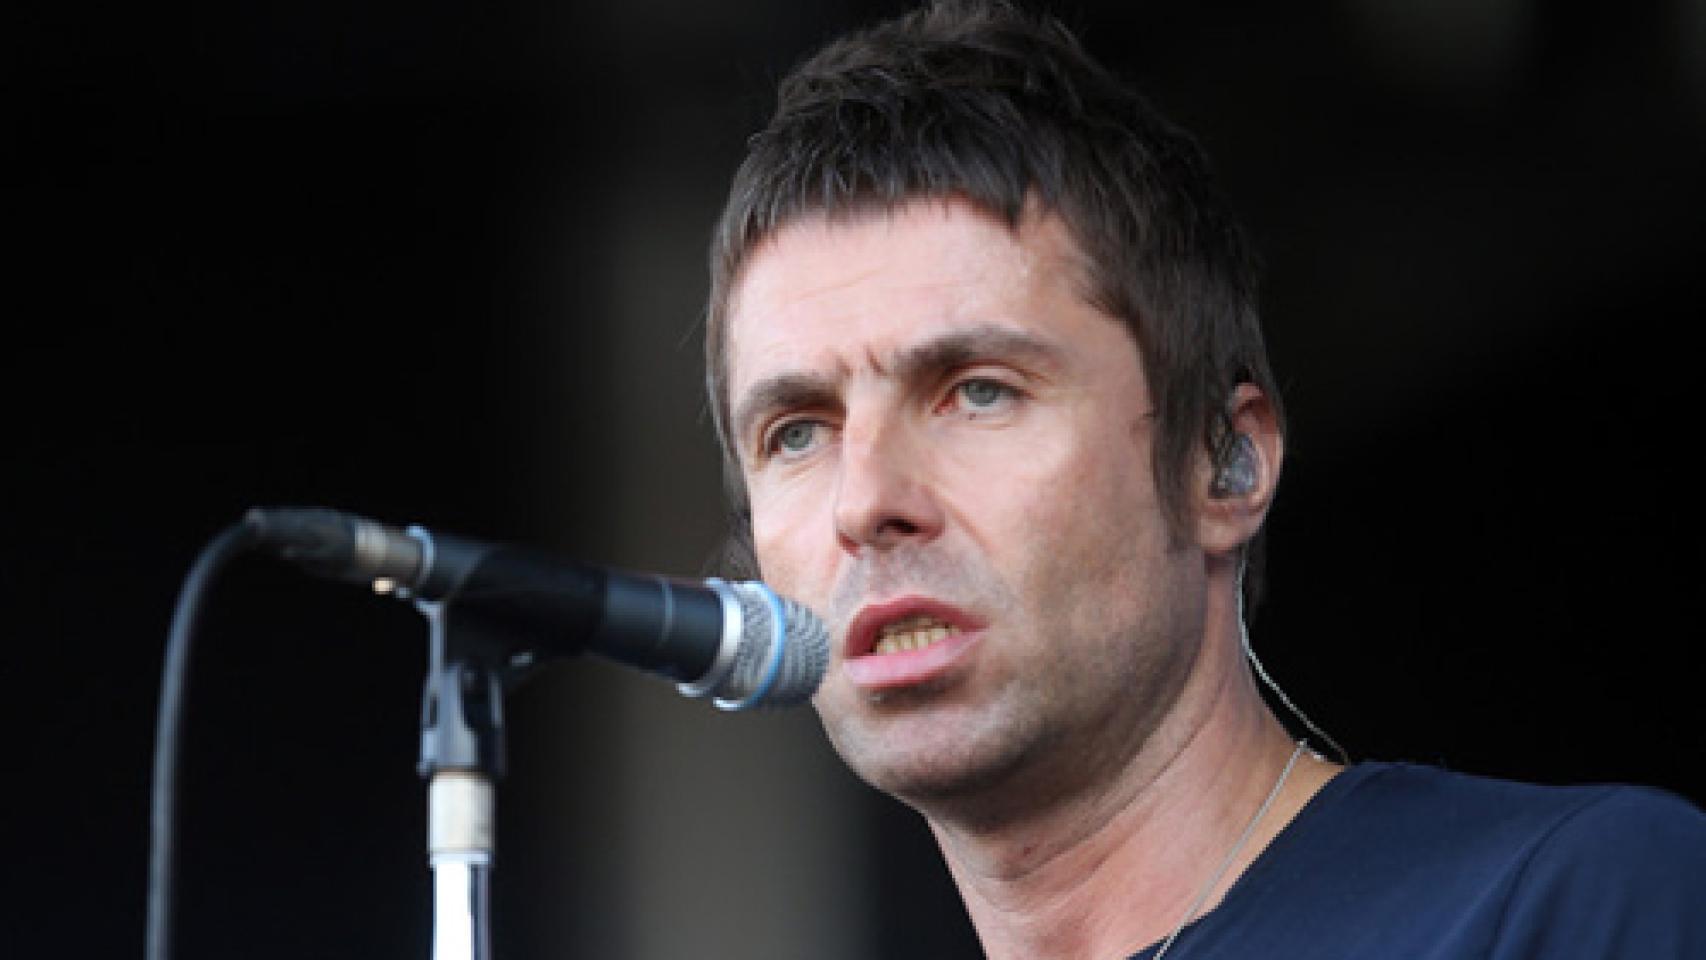 Image: Liam Gallagher se estrenará en solitario en 2017